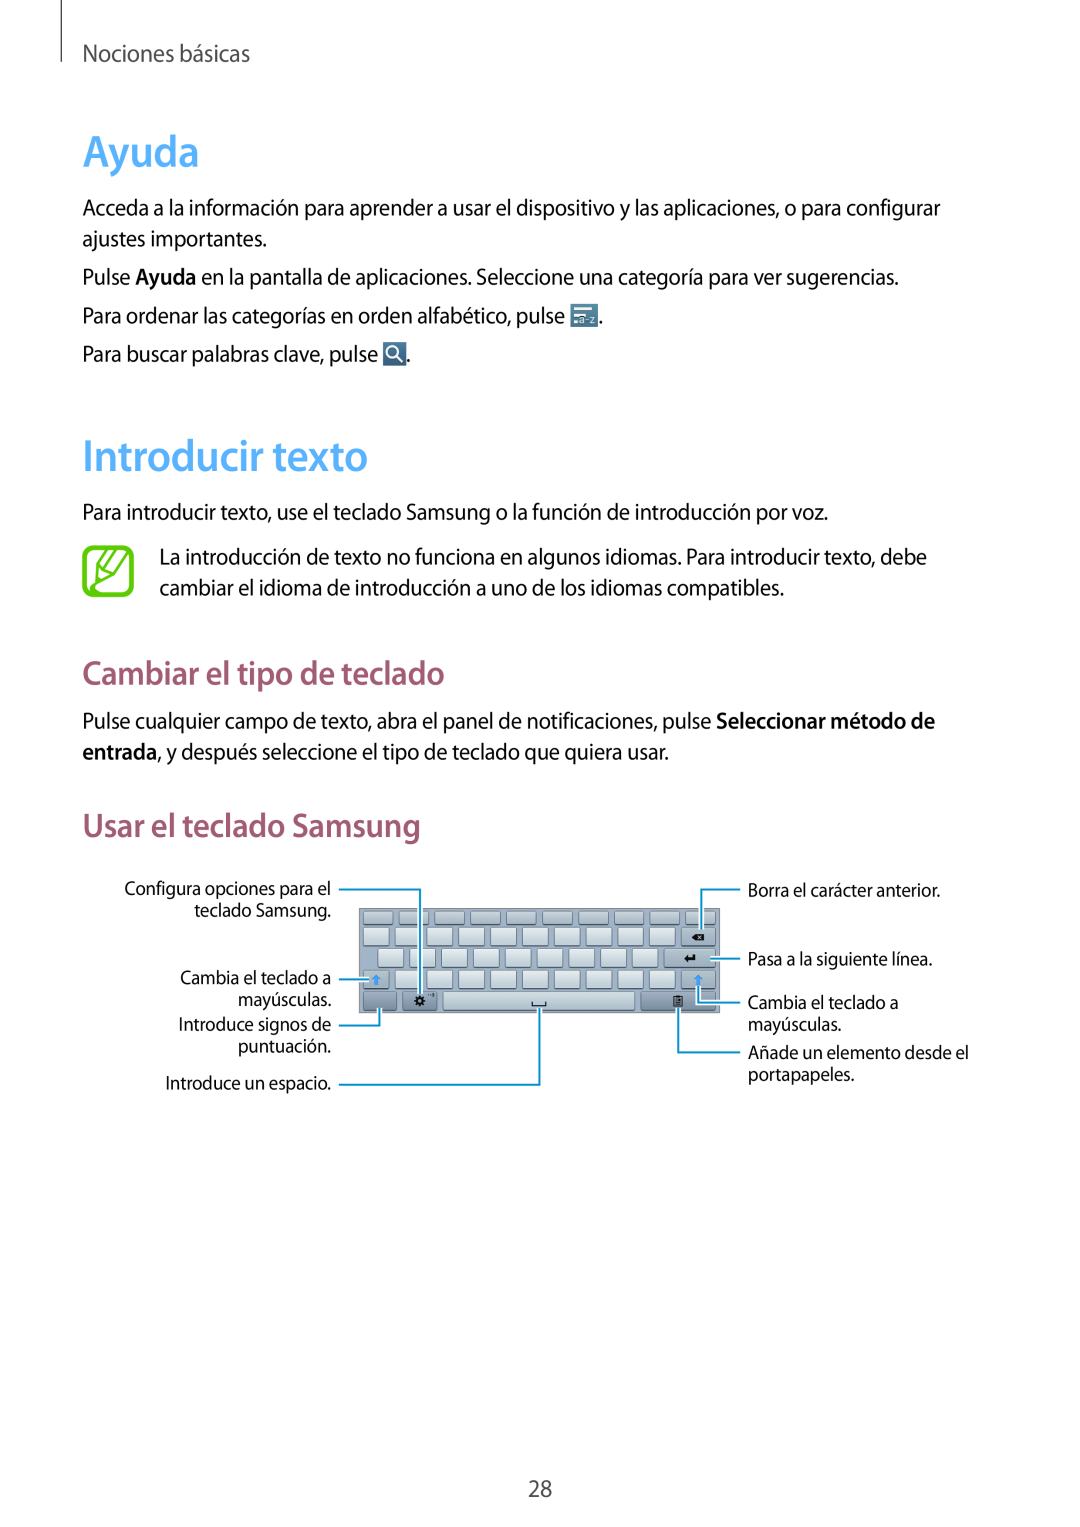 Samsung GT-P5200ZWAXEH Ayuda, Introducir texto, Cambiar el tipo de teclado, Usar el teclado Samsung, Nociones básicas 